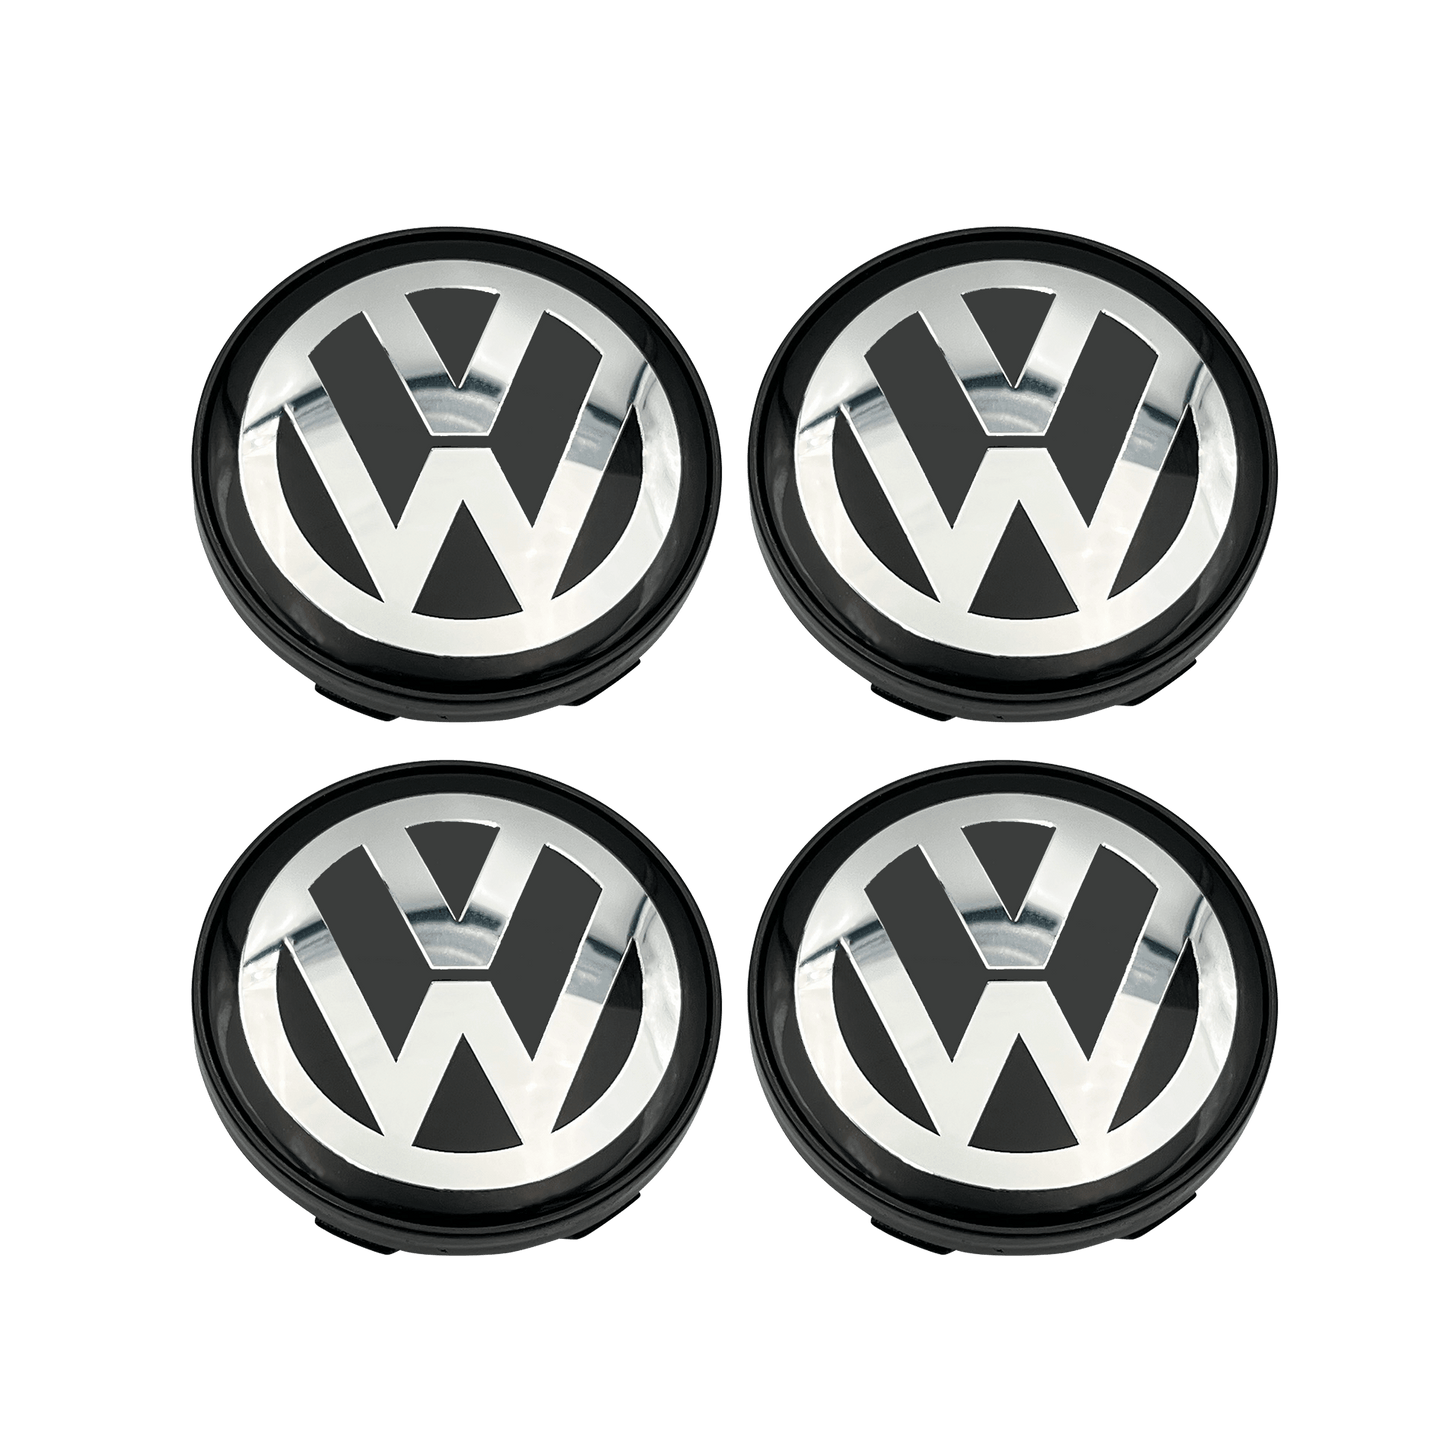 4 pieces. Chrome VW Center caps